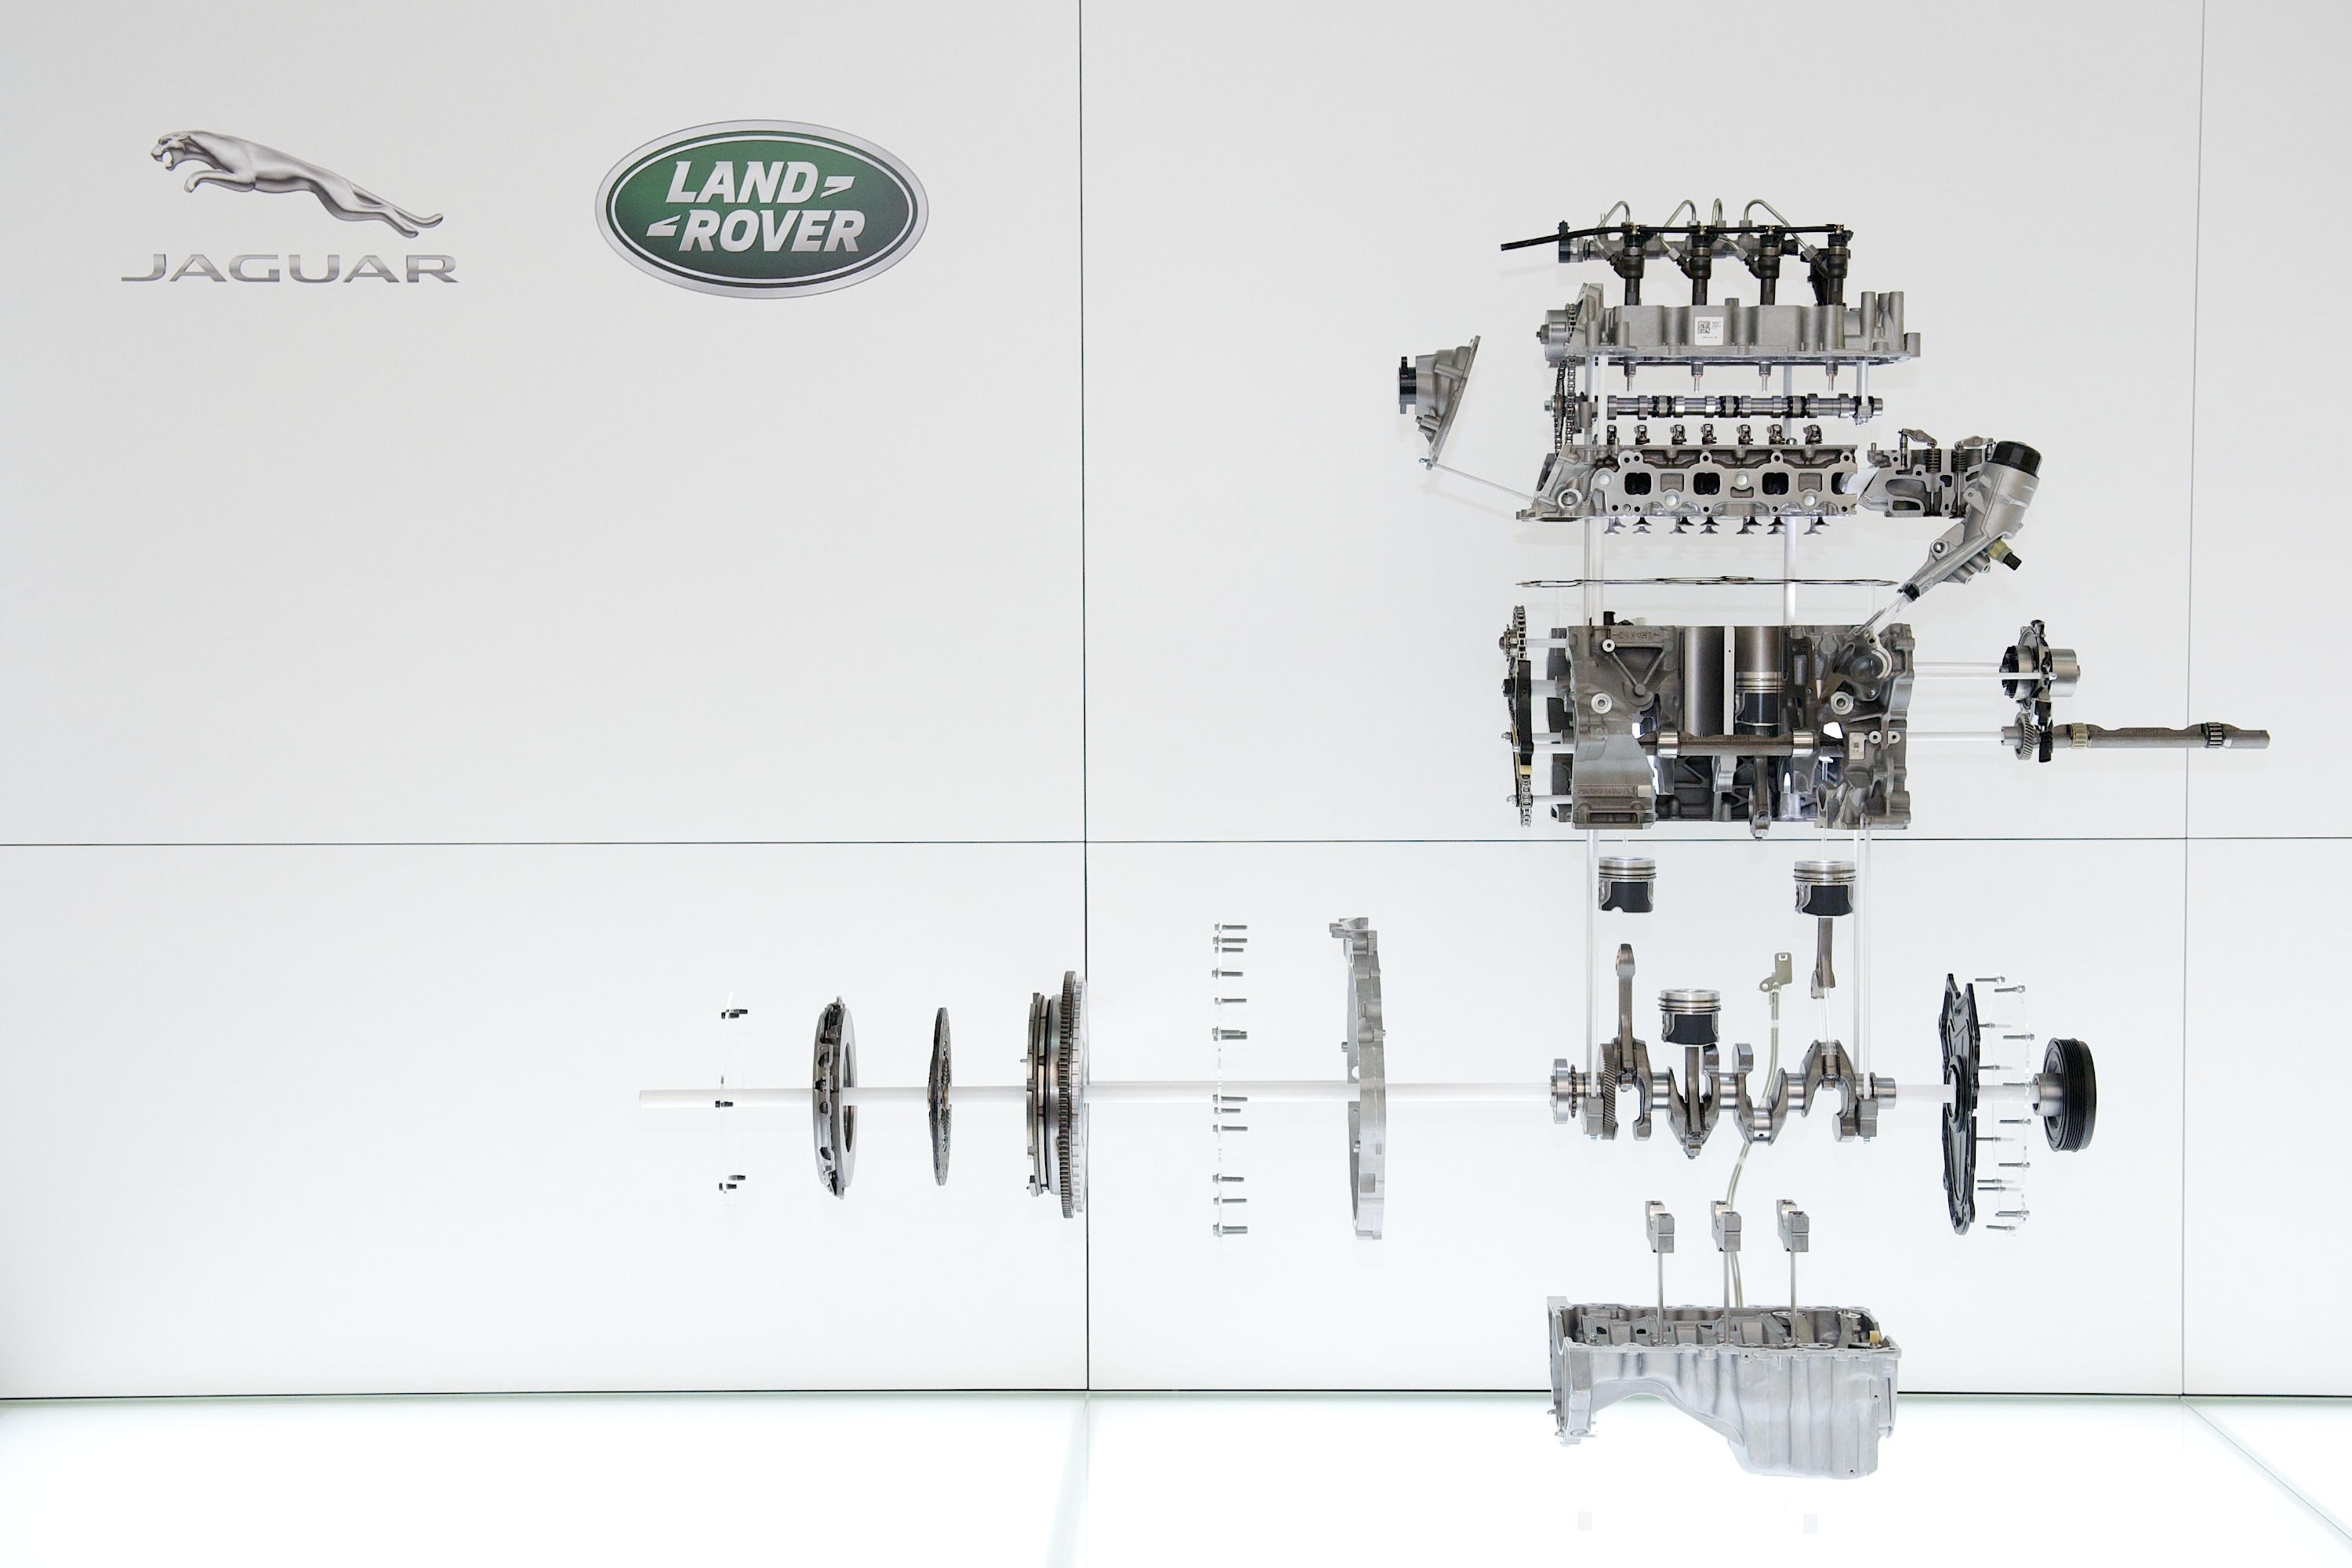 2 0 литровият четирицилиндров бензинов двигател Ingenium на Jaguar Land Rover с